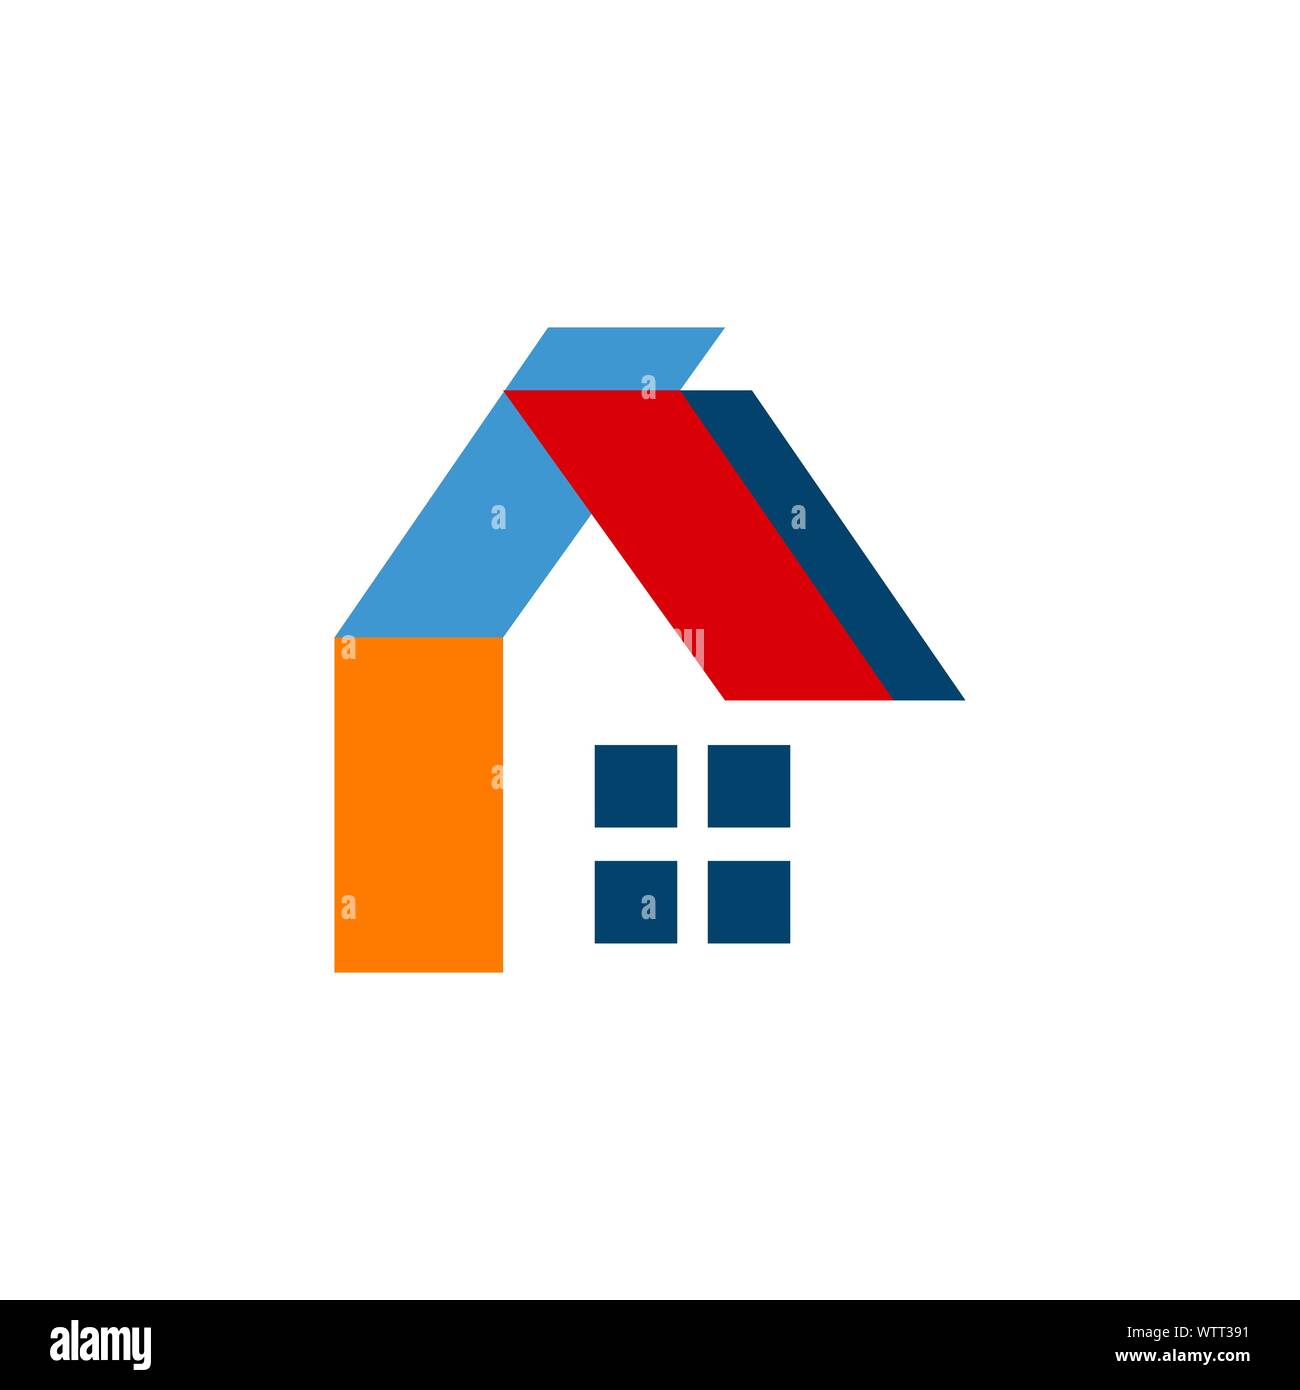 Concetto e idea di casa appartamento realty logo design vector home la costruzione dell'edificio simbolo di architettura Illustrazione Vettoriale